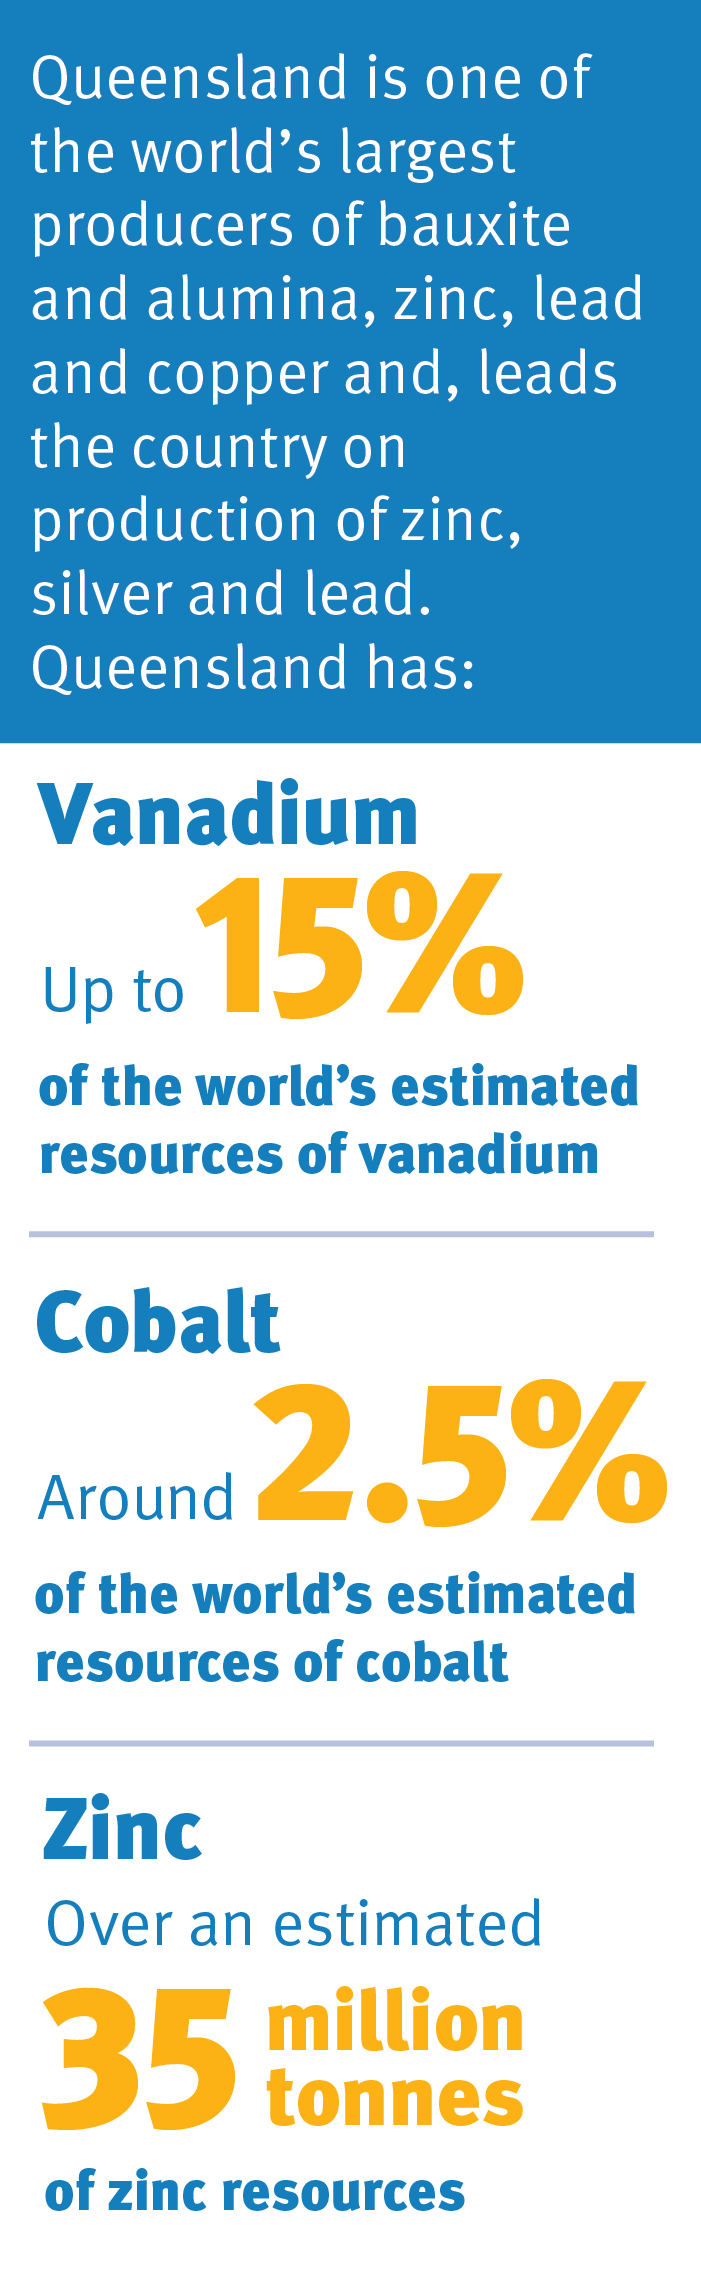 Queensland has an estimated 15% of the world's vanadium, 2.5% cobalt, 35 million of zinc.